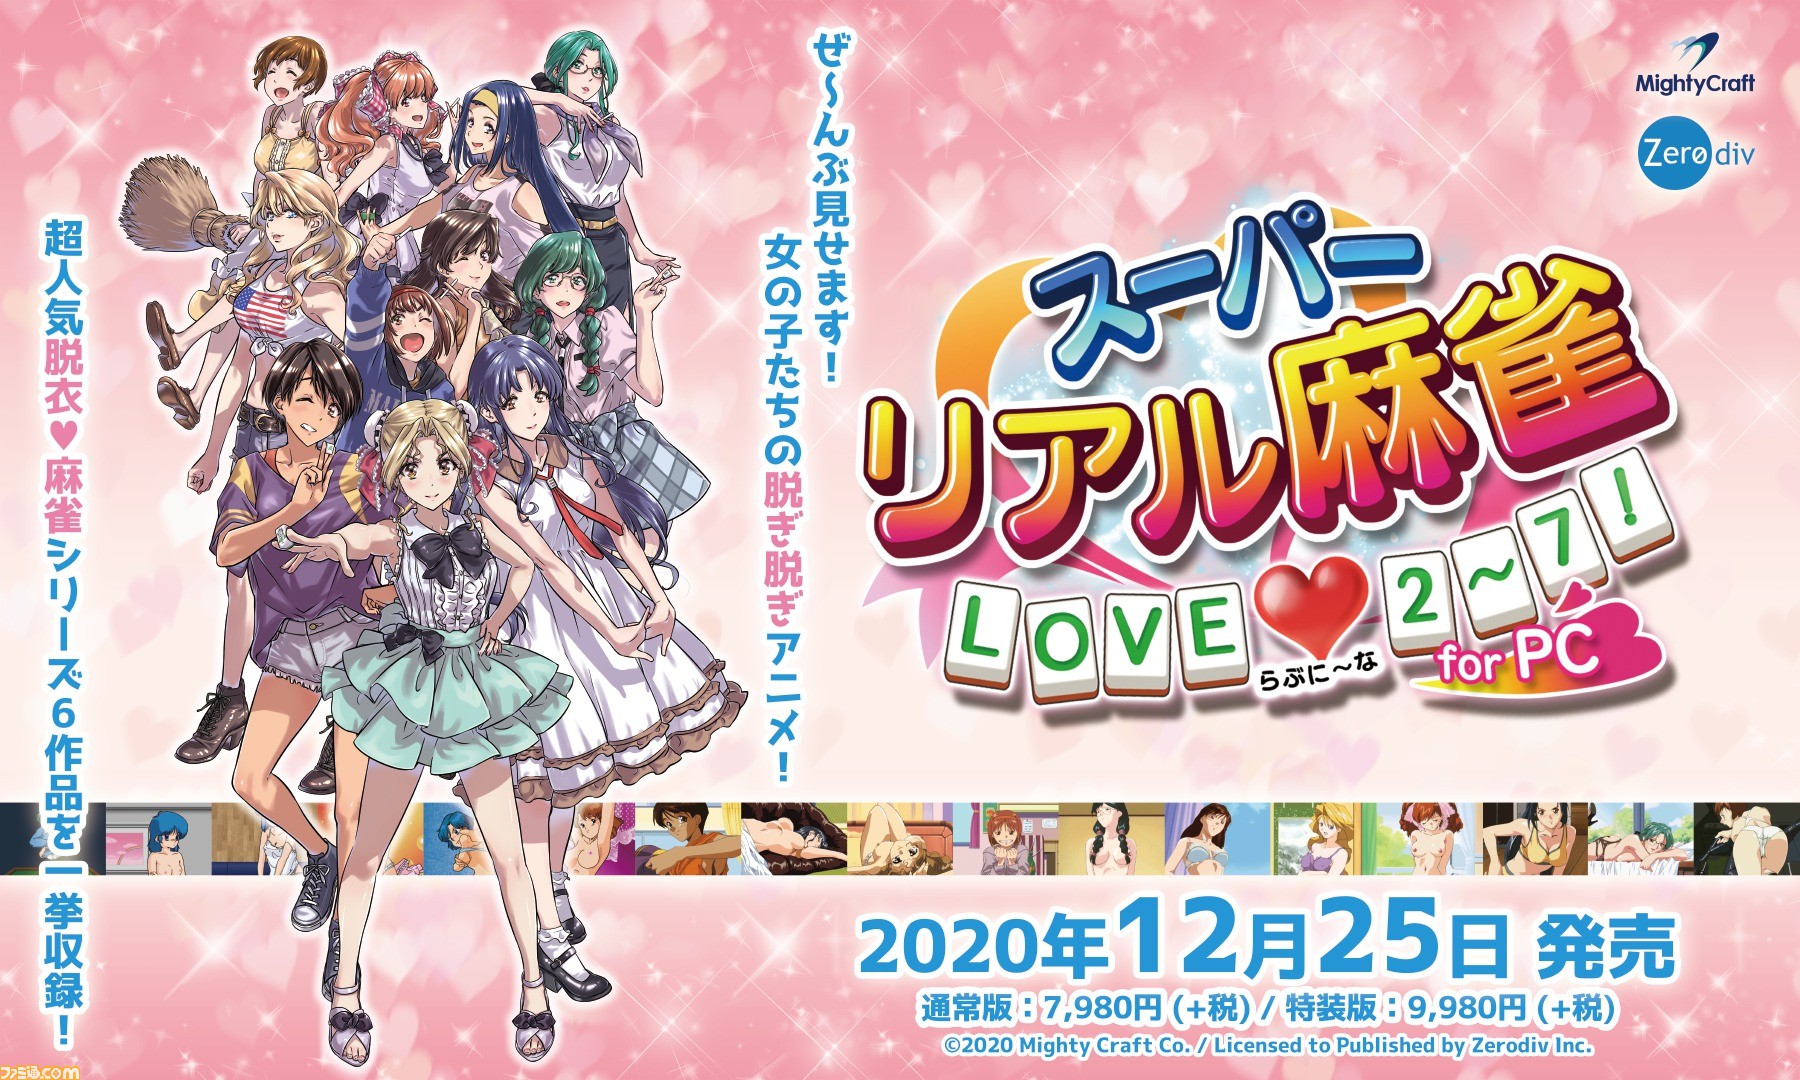 スーパーリアル麻雀 LOVE 2～7! for PC』が12月25日発売。PIIからP7の6